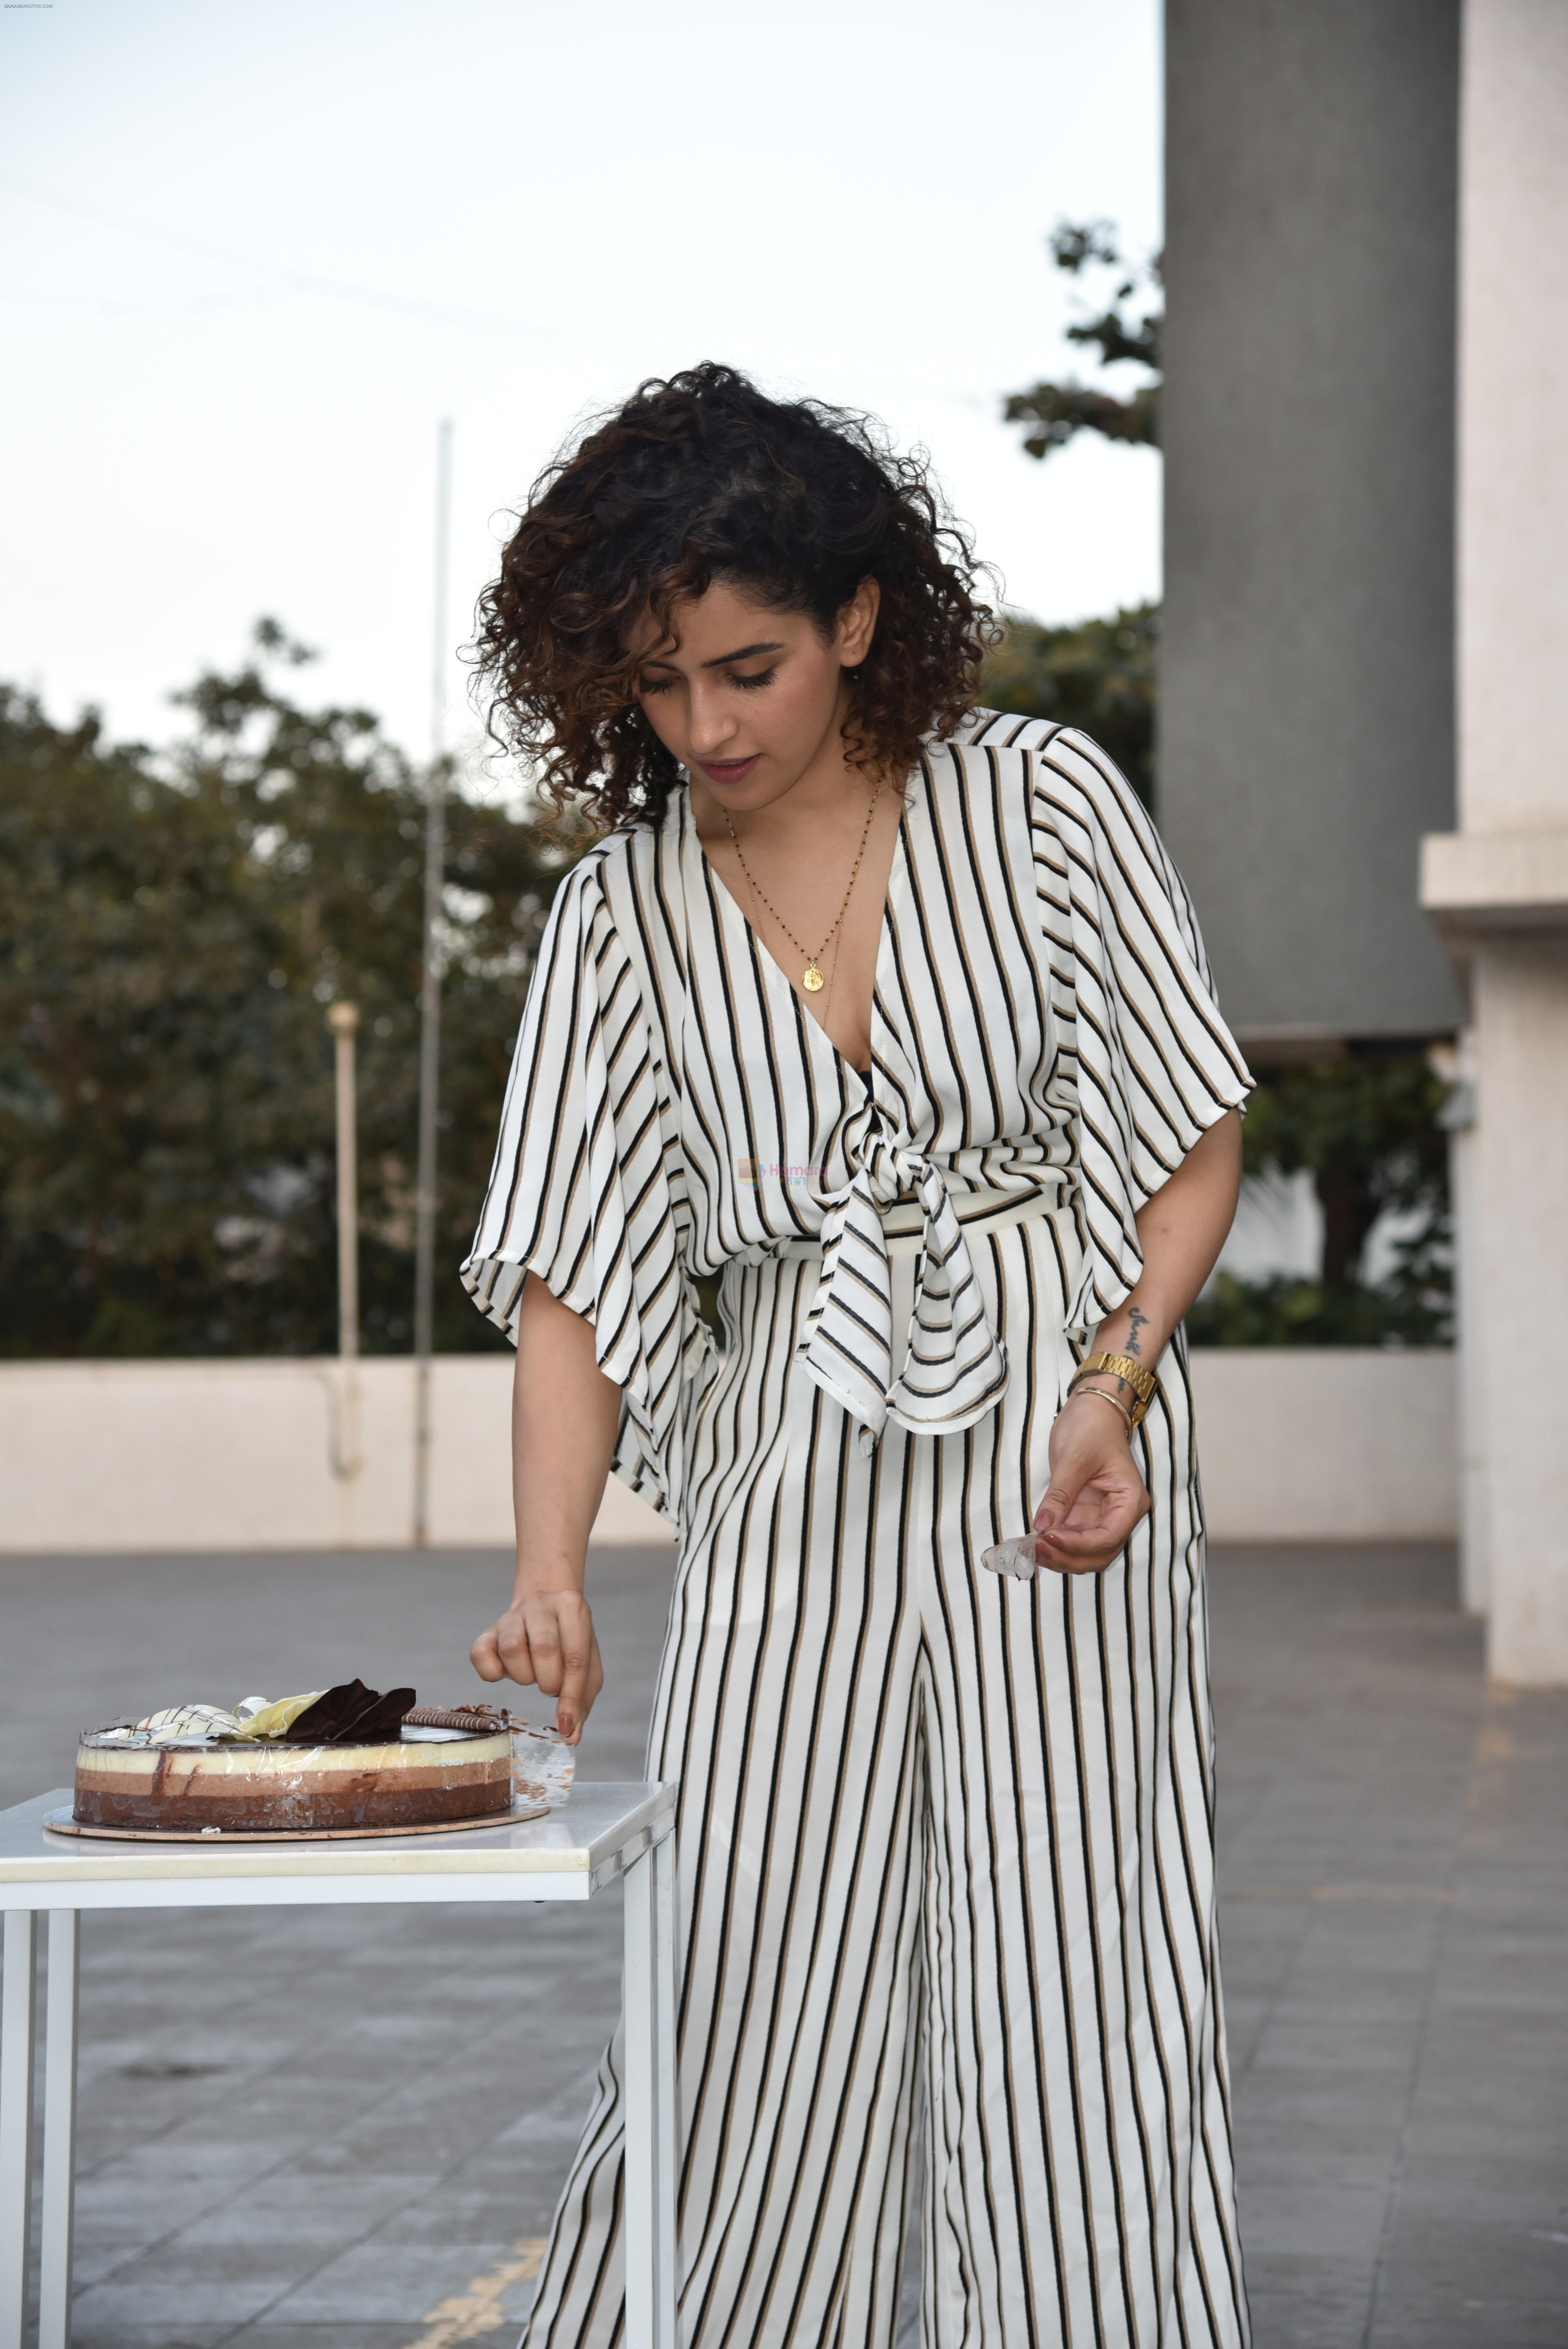 Sanya Malhotra Celebrate Birthday With Media on 26th Feb 2019